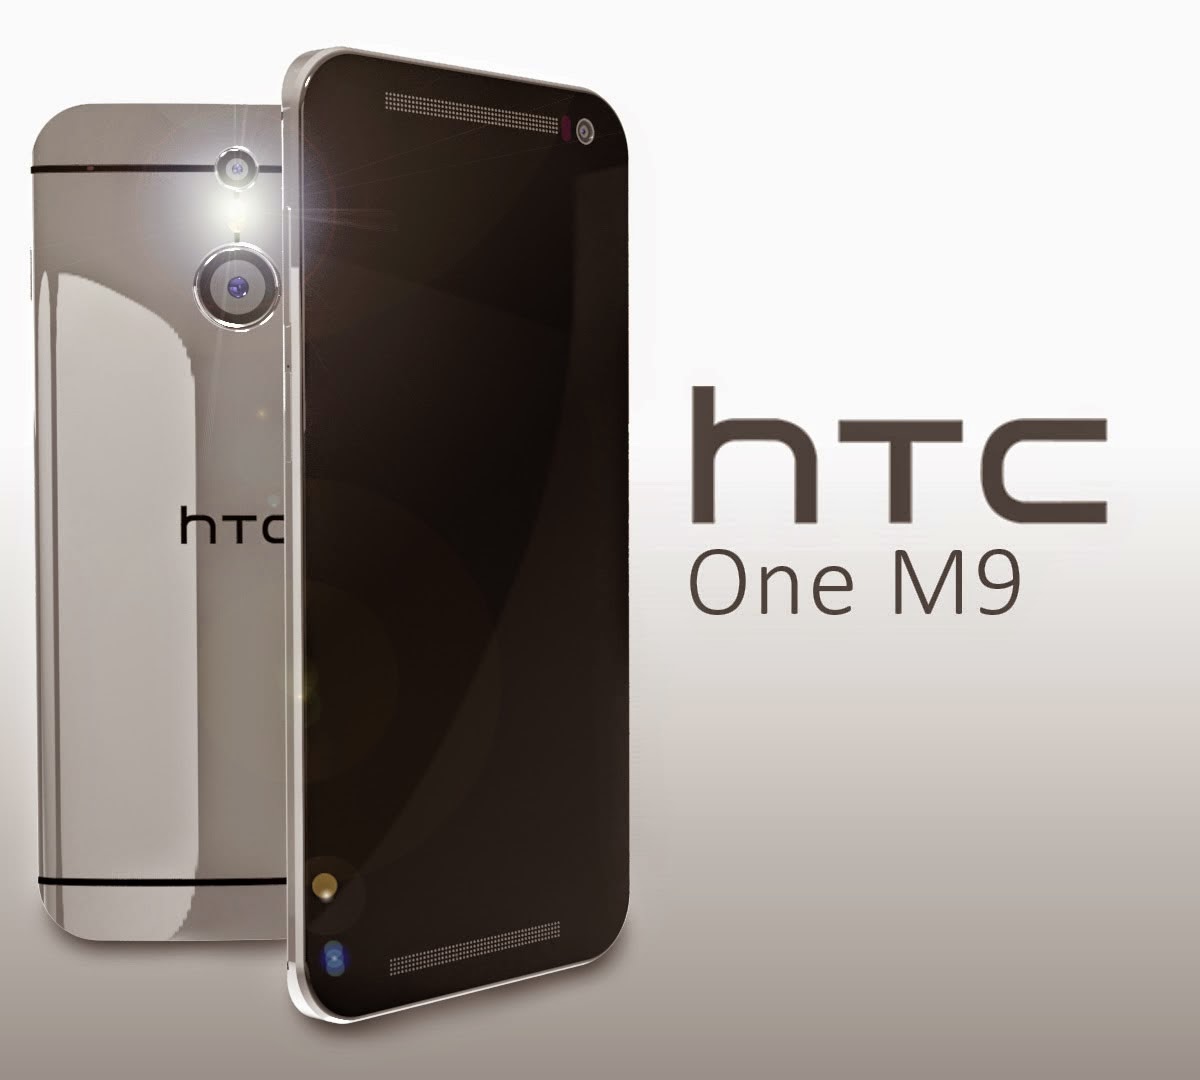 Р�РєРѕРЅРєР° HTC M9 Представленный:  может ли соперничать с Apple Inc. iPhone 6?